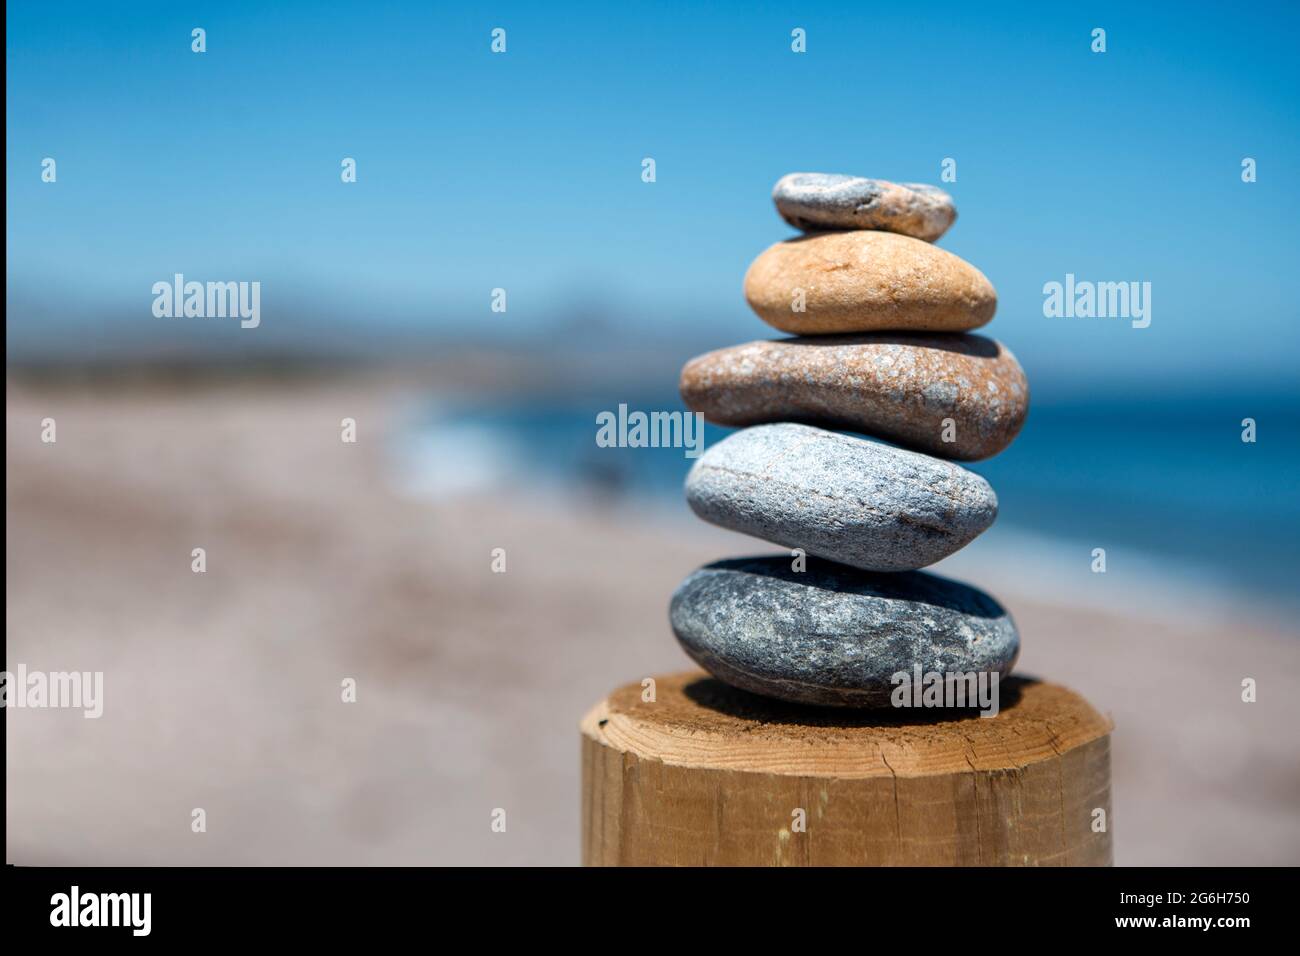 Gleichgewicht und Schönheit in einer pyramidenförmigen Form von fünf Steinen, die übereinander in Balance gebracht werden, mit Blick auf das Meer, was Frieden und visuelle Harmonie gibt. Stockfoto